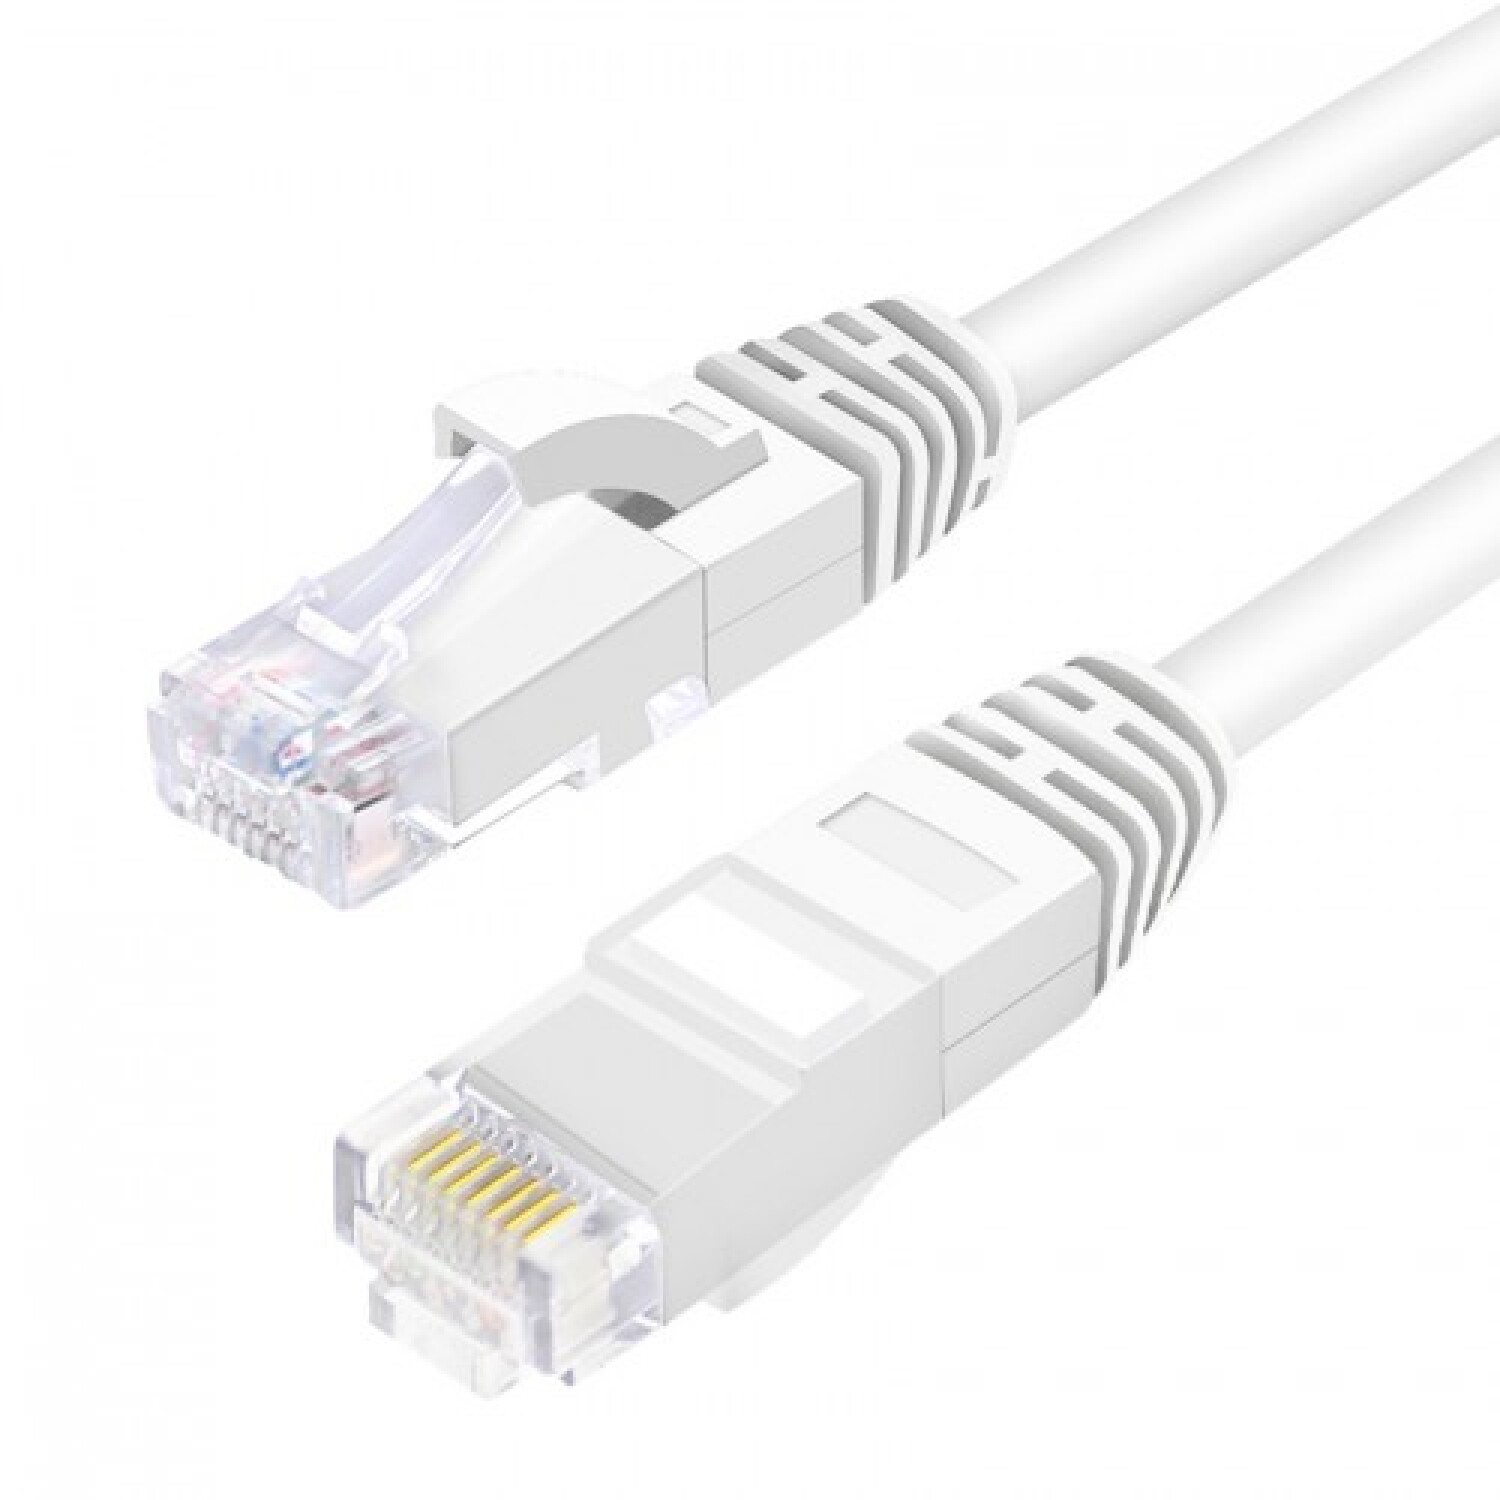 Cable De Red Ethernet Internet 20 Metros Rj45 Cat 6 Plano